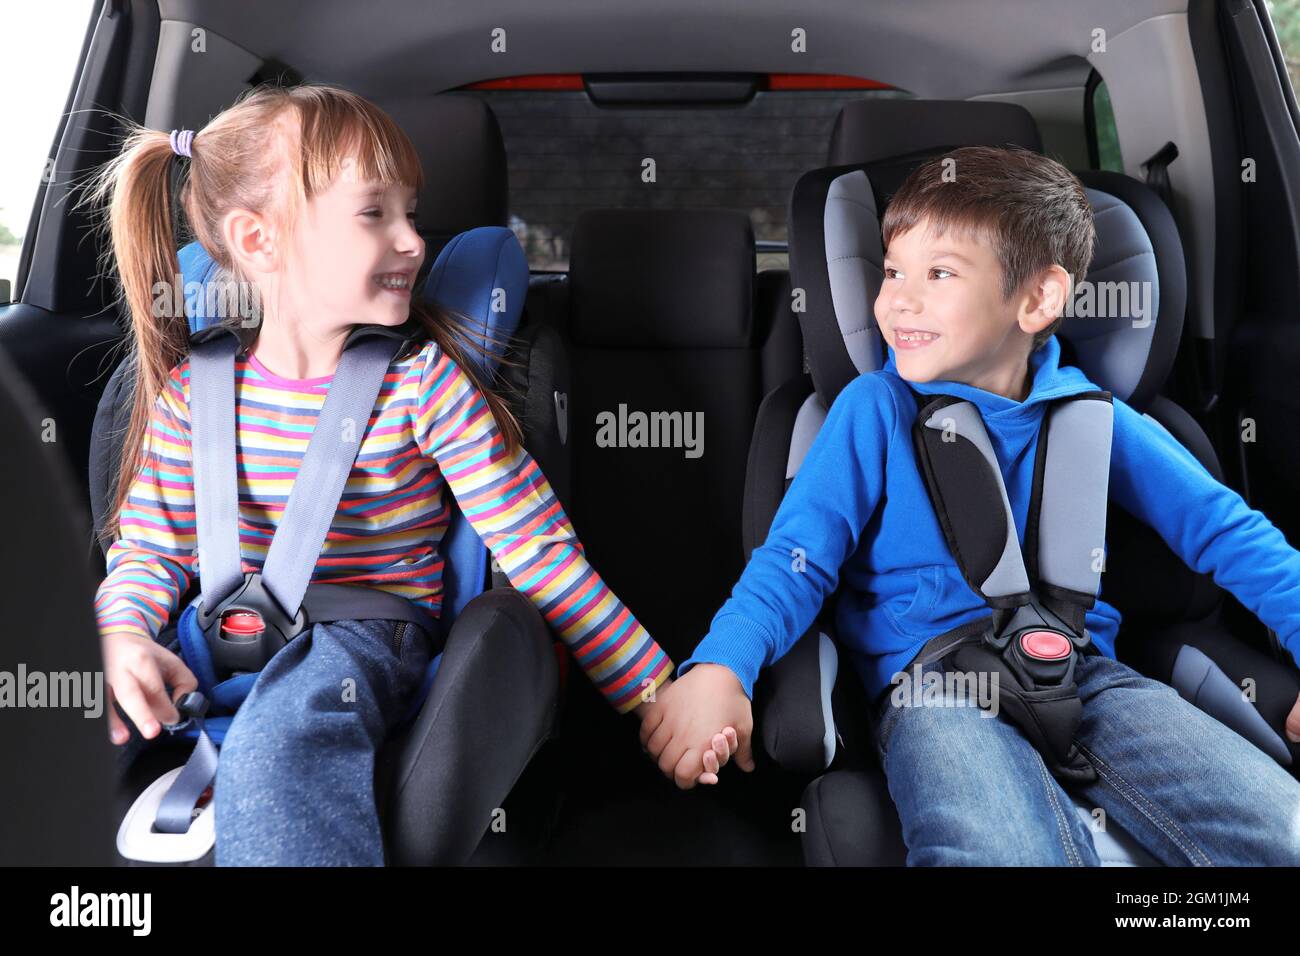 Niedliche Kinder mit befestigt Sicherheitsgurte im Auto Stockfotografie -  Alamy